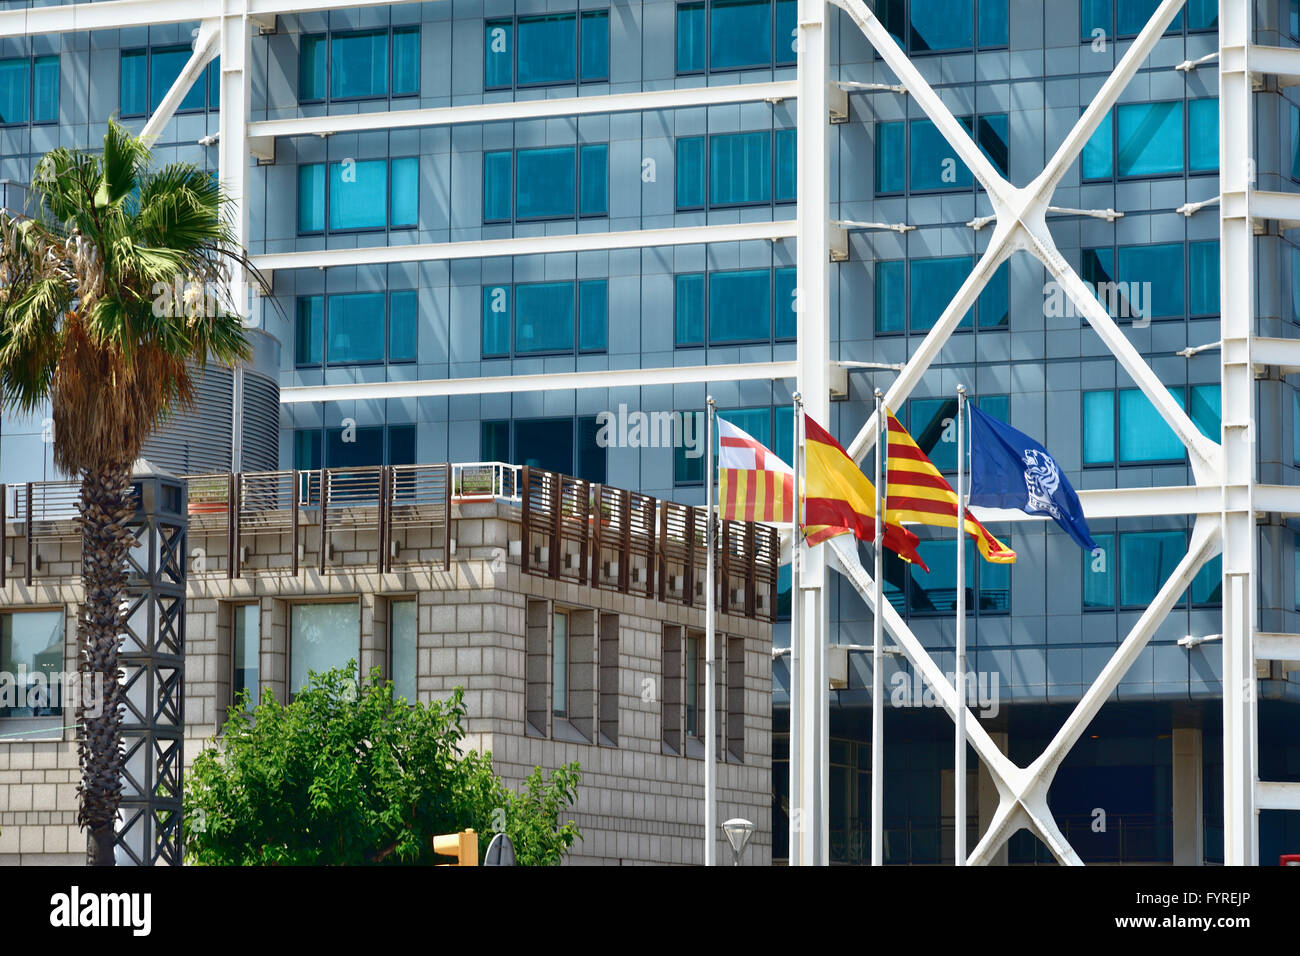 L'Hôtel Des Arts est un 44 étages, 483 chambres hôtel de luxe sur le front de mer de Barcelone, Catalogne, Espagne, Europe Banque D'Images